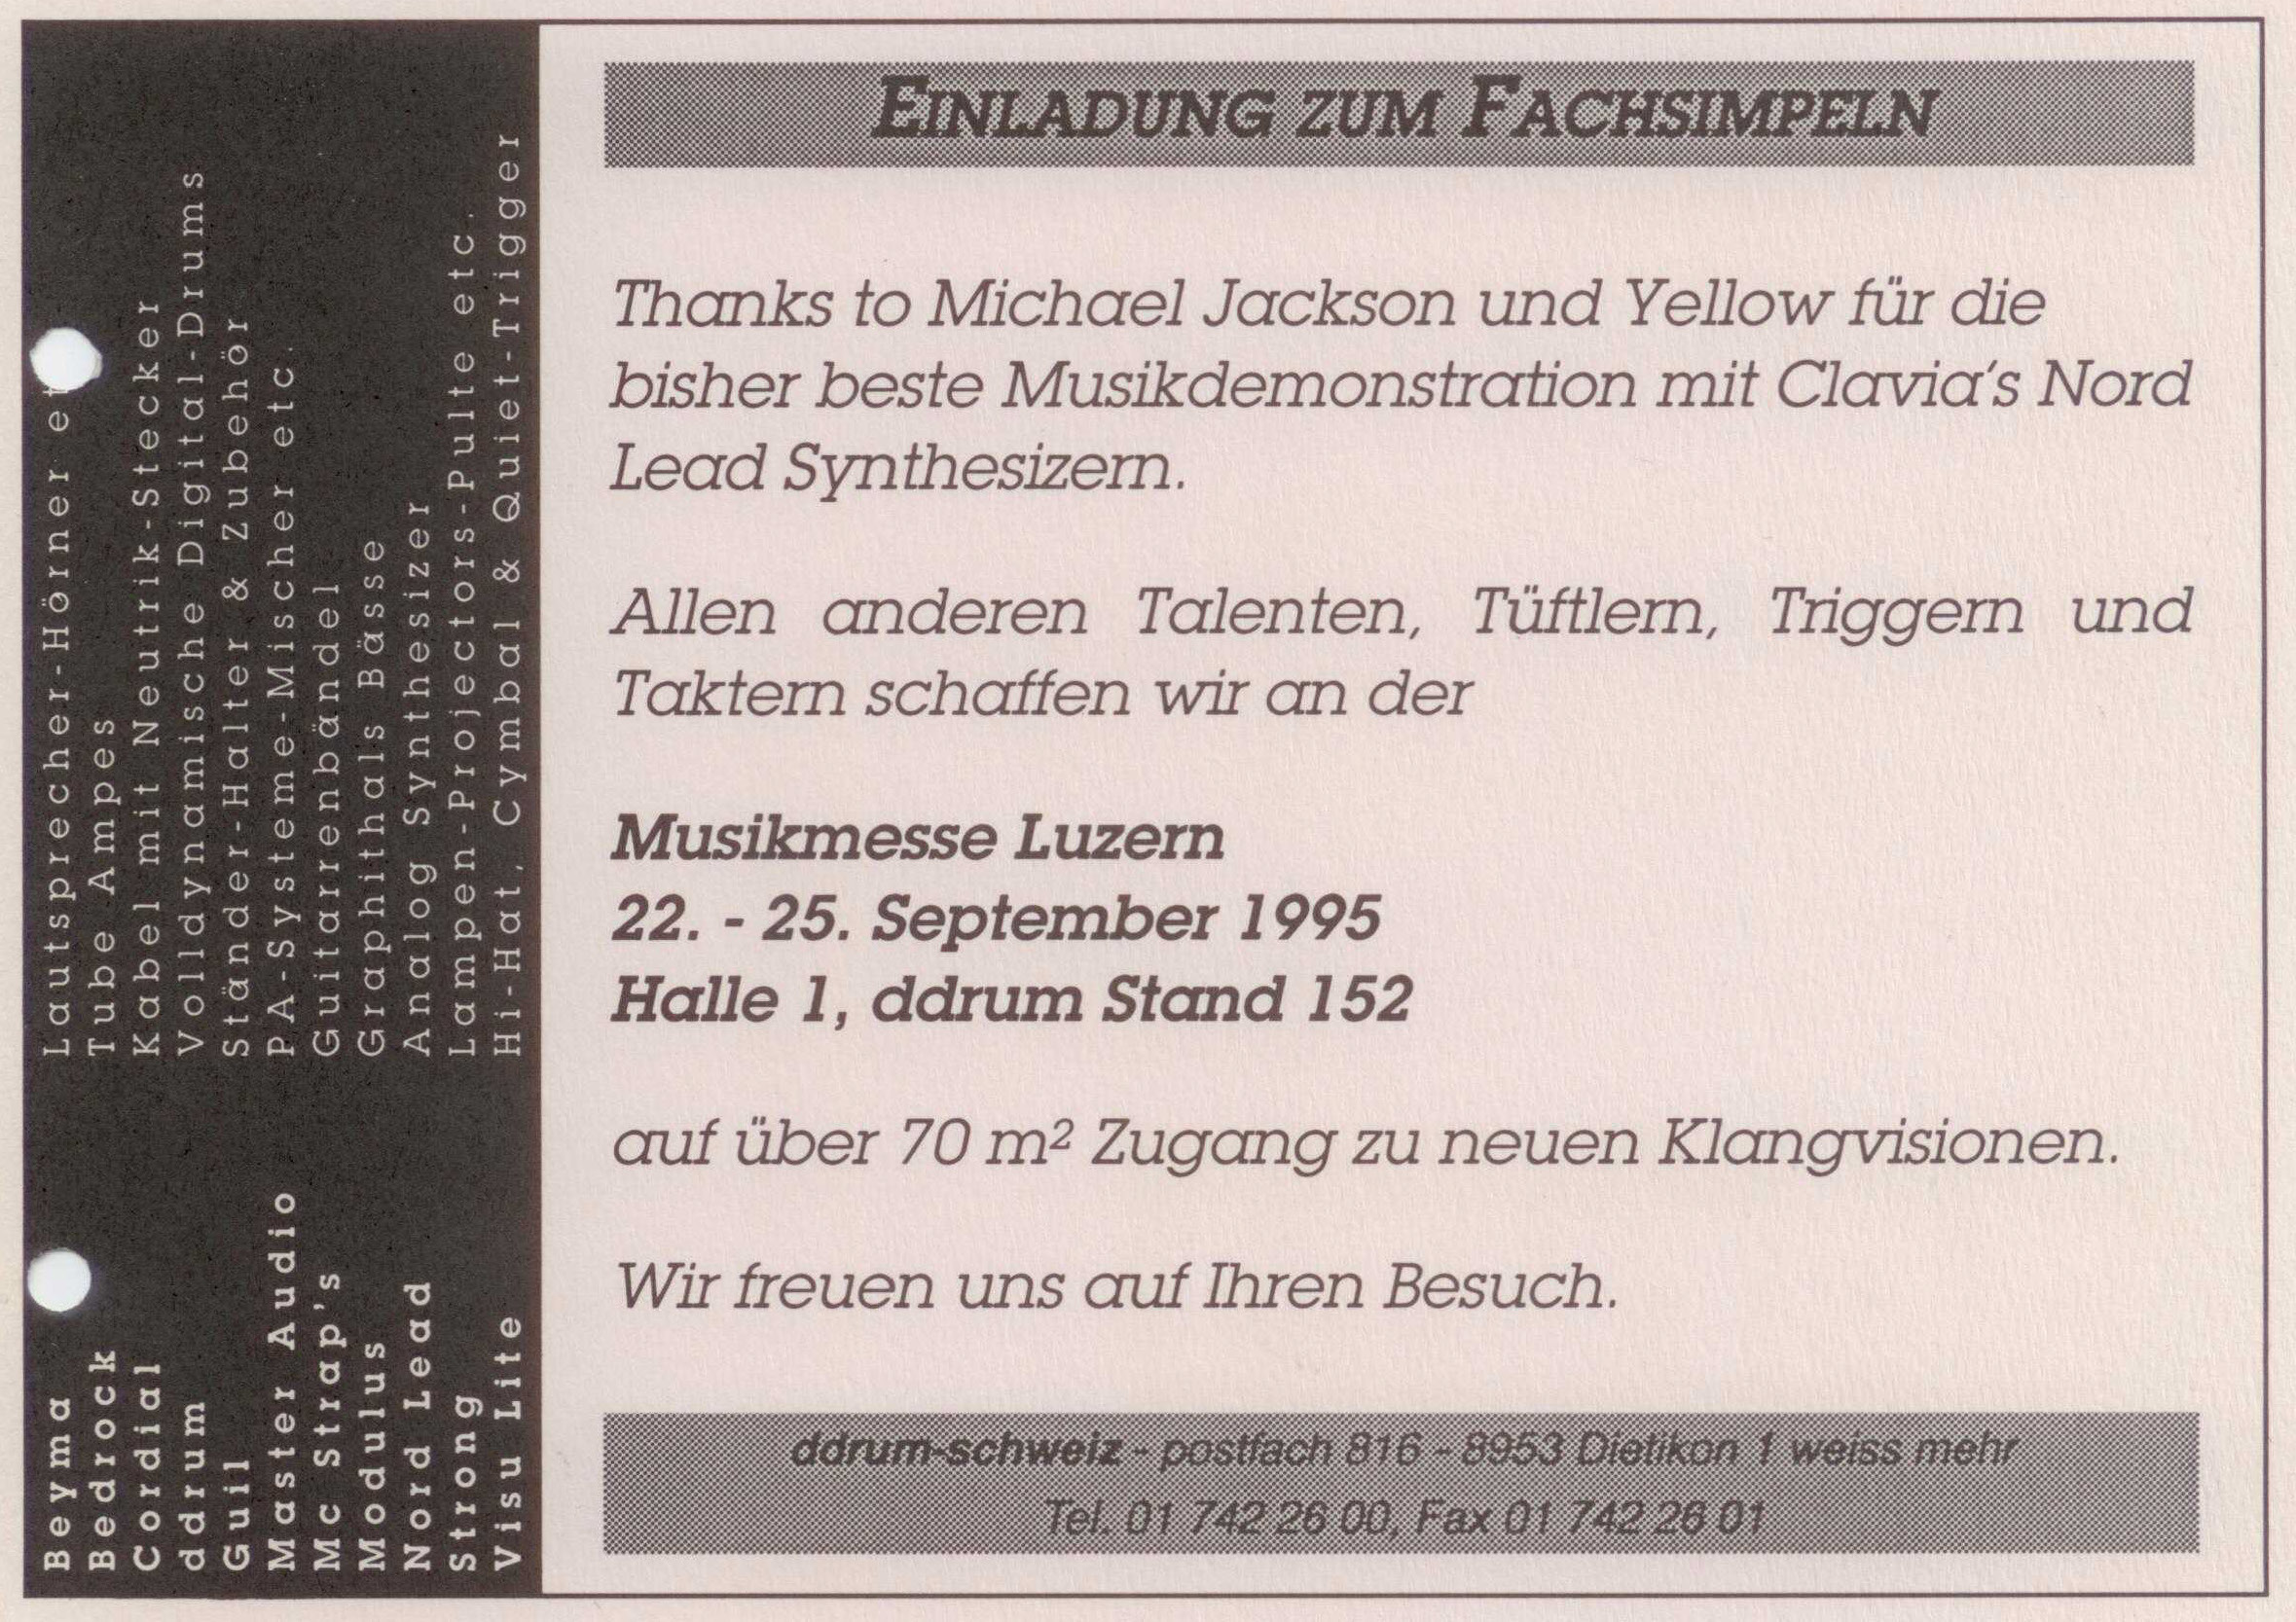 Foto-3-Einladung-Messe-Luzern-ddrum-nordlead-Visu-Lite-ddrum-schweiz